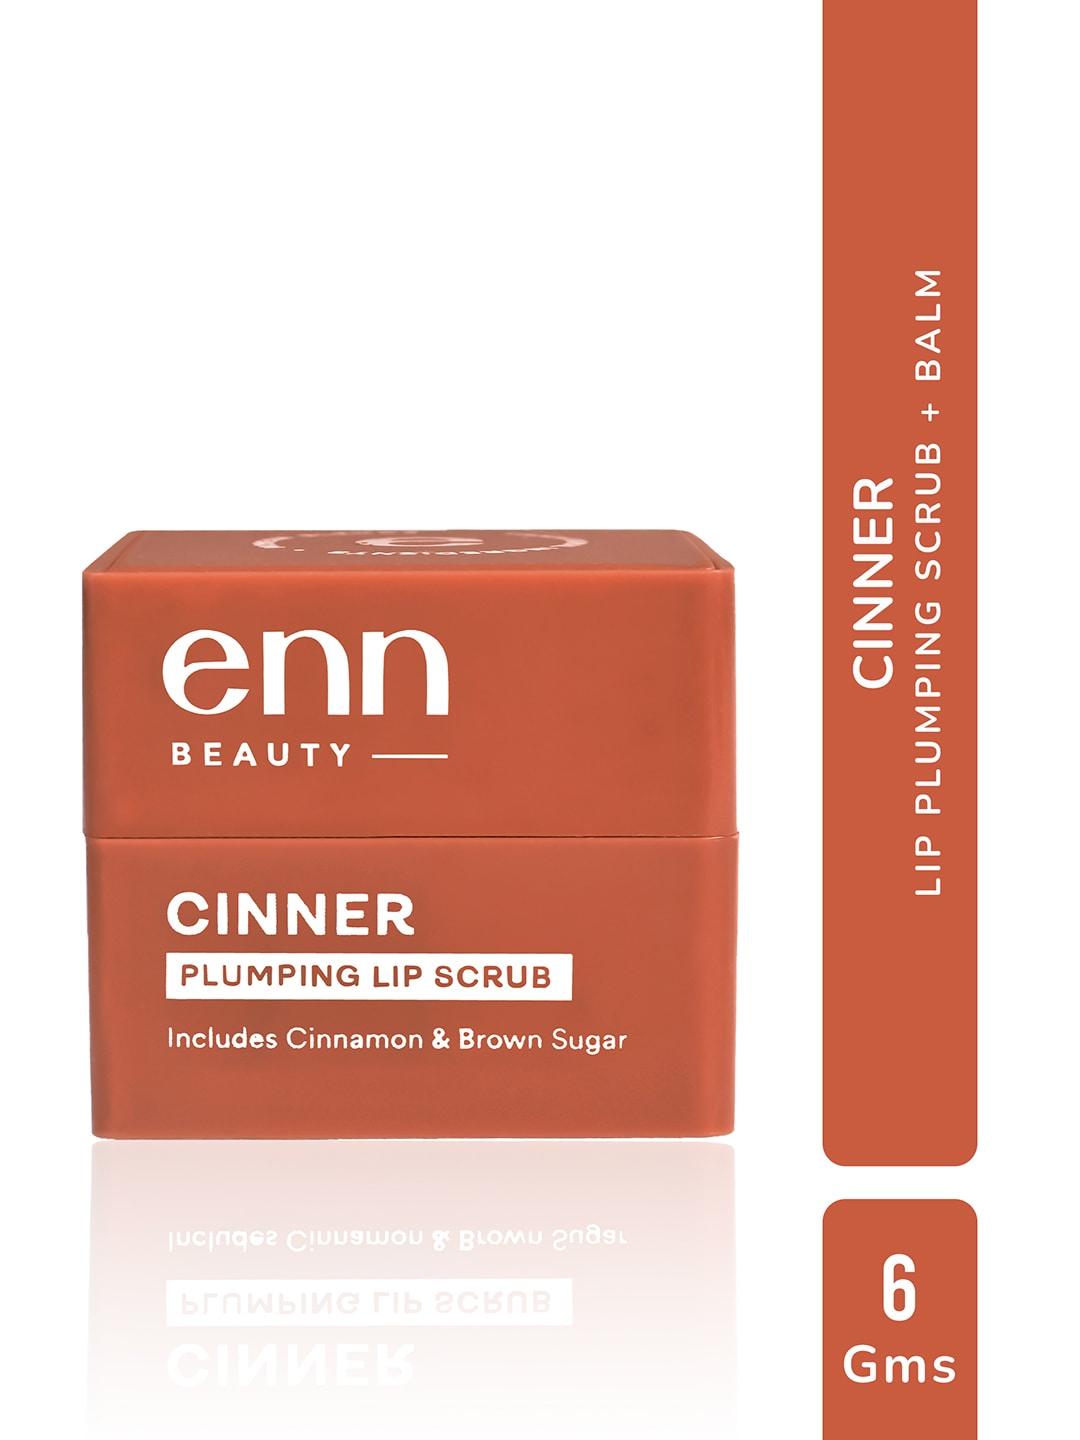 ENN Plumping Lip Scrub with Cinnamon & Brown Sugar 6 g - Cinner